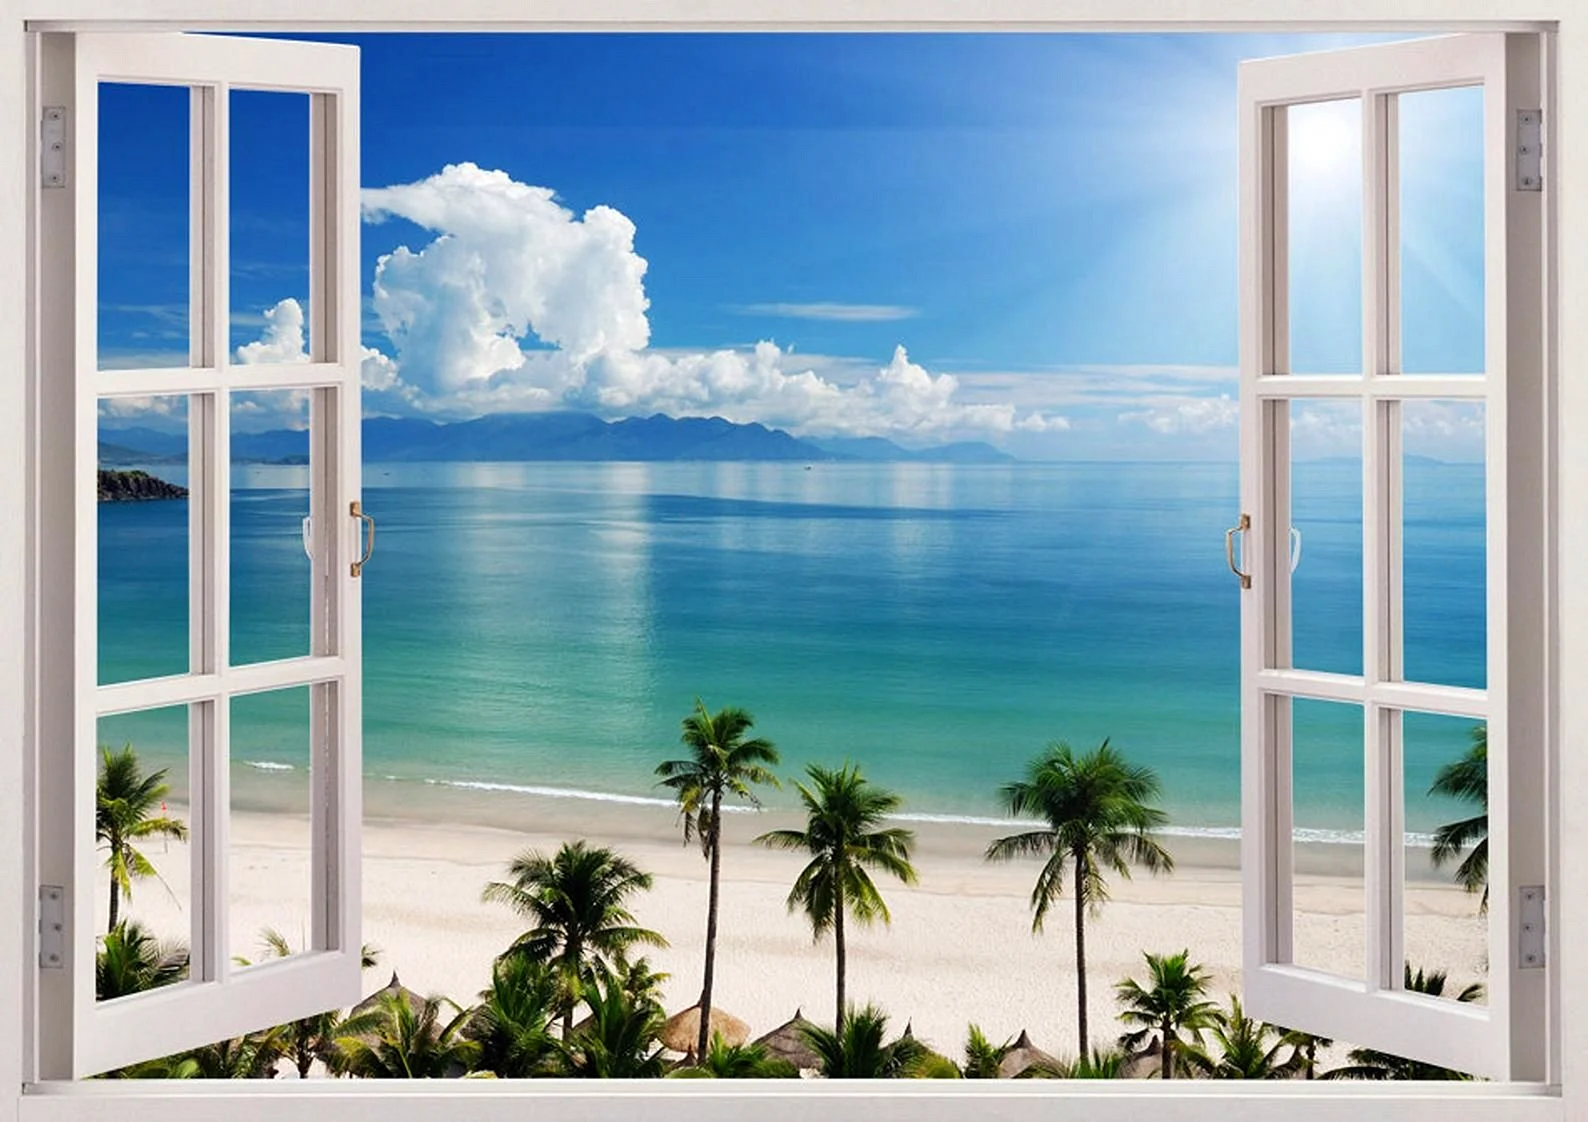 Seaview Window Wallpaper